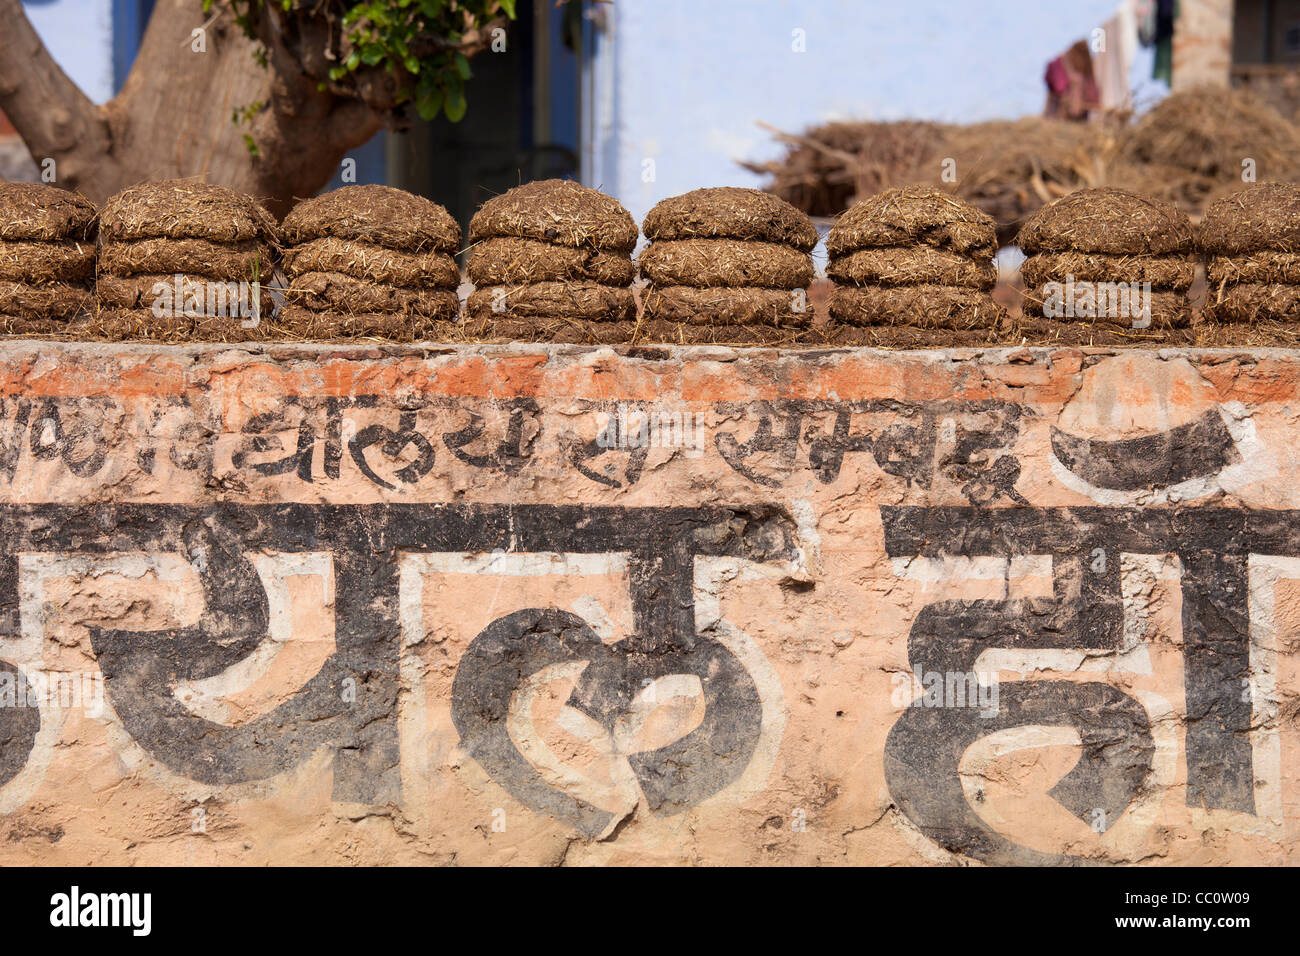 Indianerdorf mit getrockneten Kuhdung als Brennstoff in Sawai Madhopur in Rajasthan, Nordindien nach Hause Stockfoto